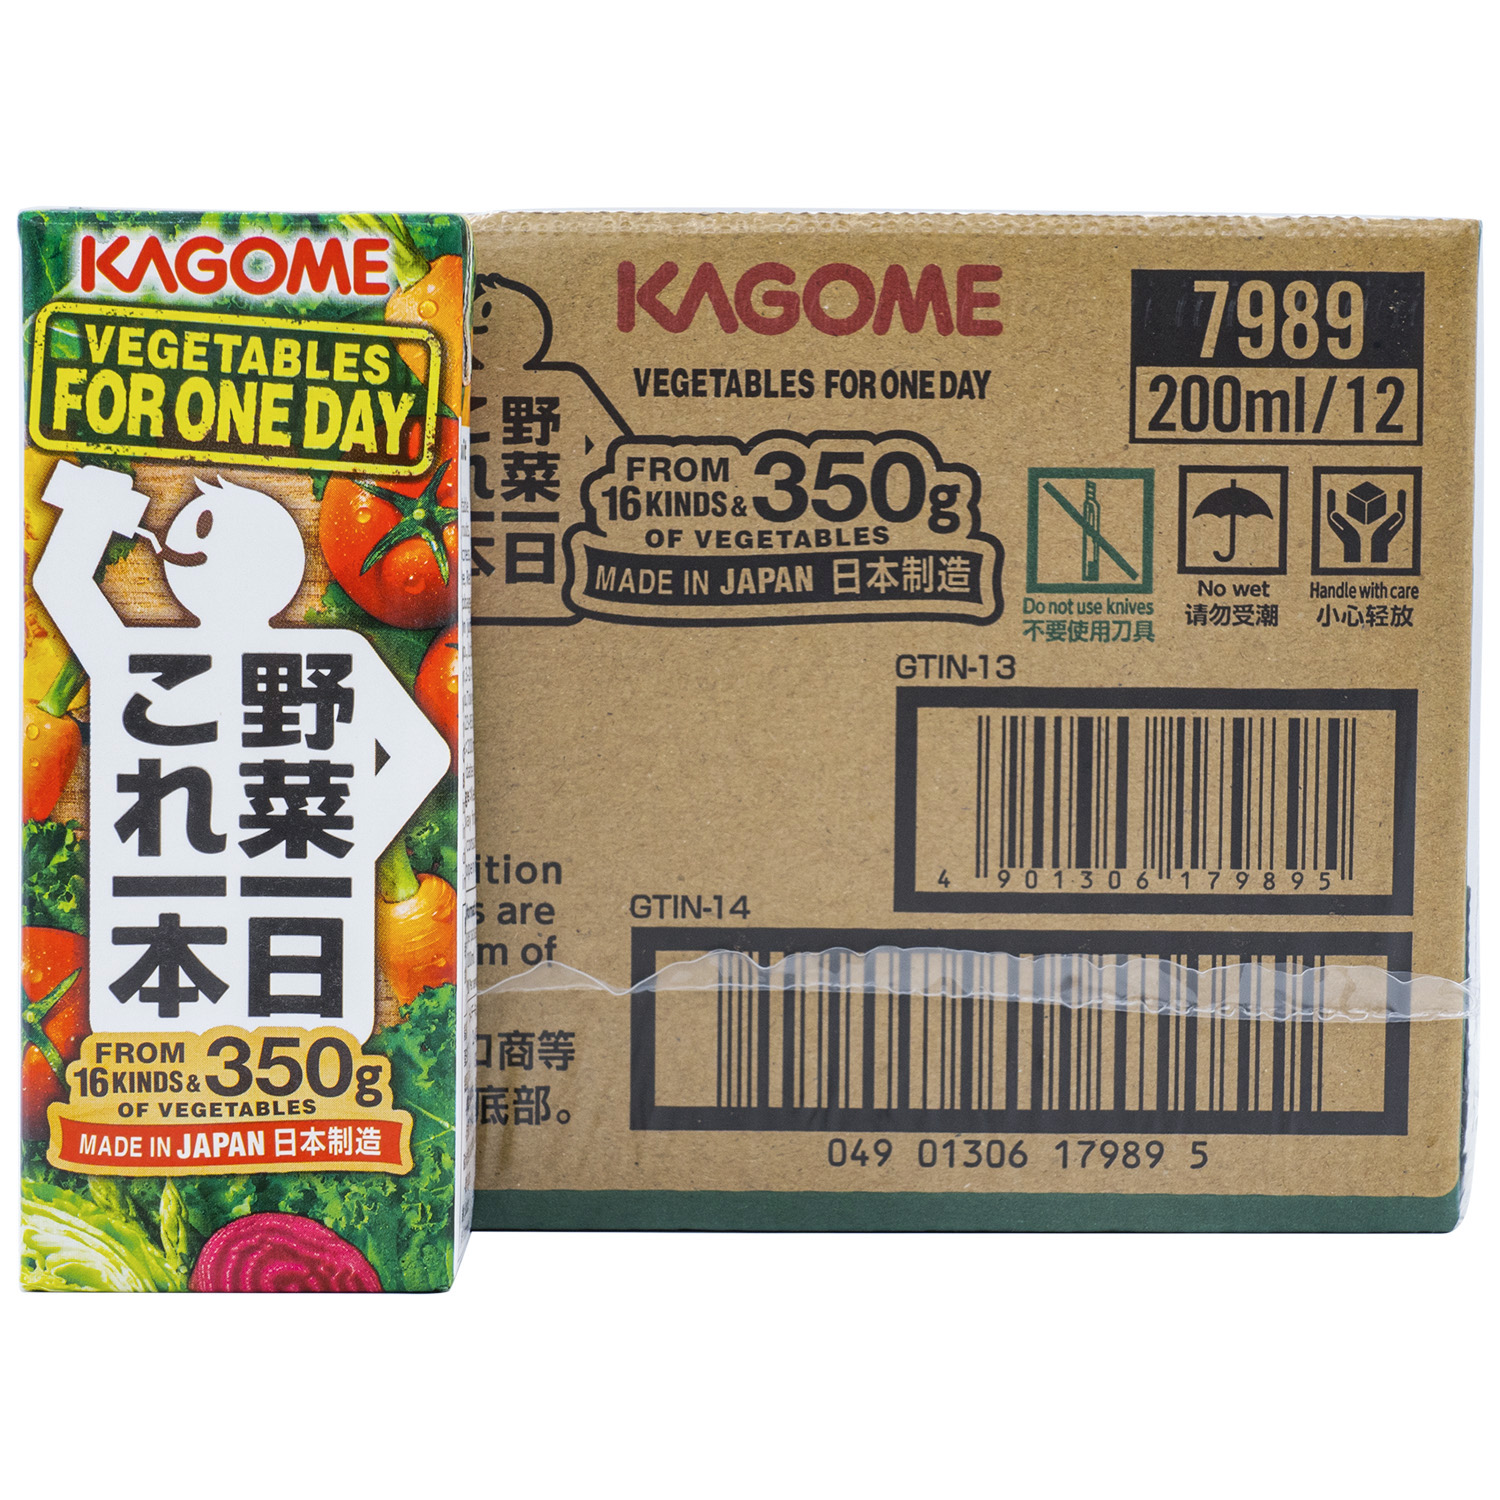 现货日本kagome可果美野菜汁混合果蔬蔬菜汁轻断食生活200ml 12盒